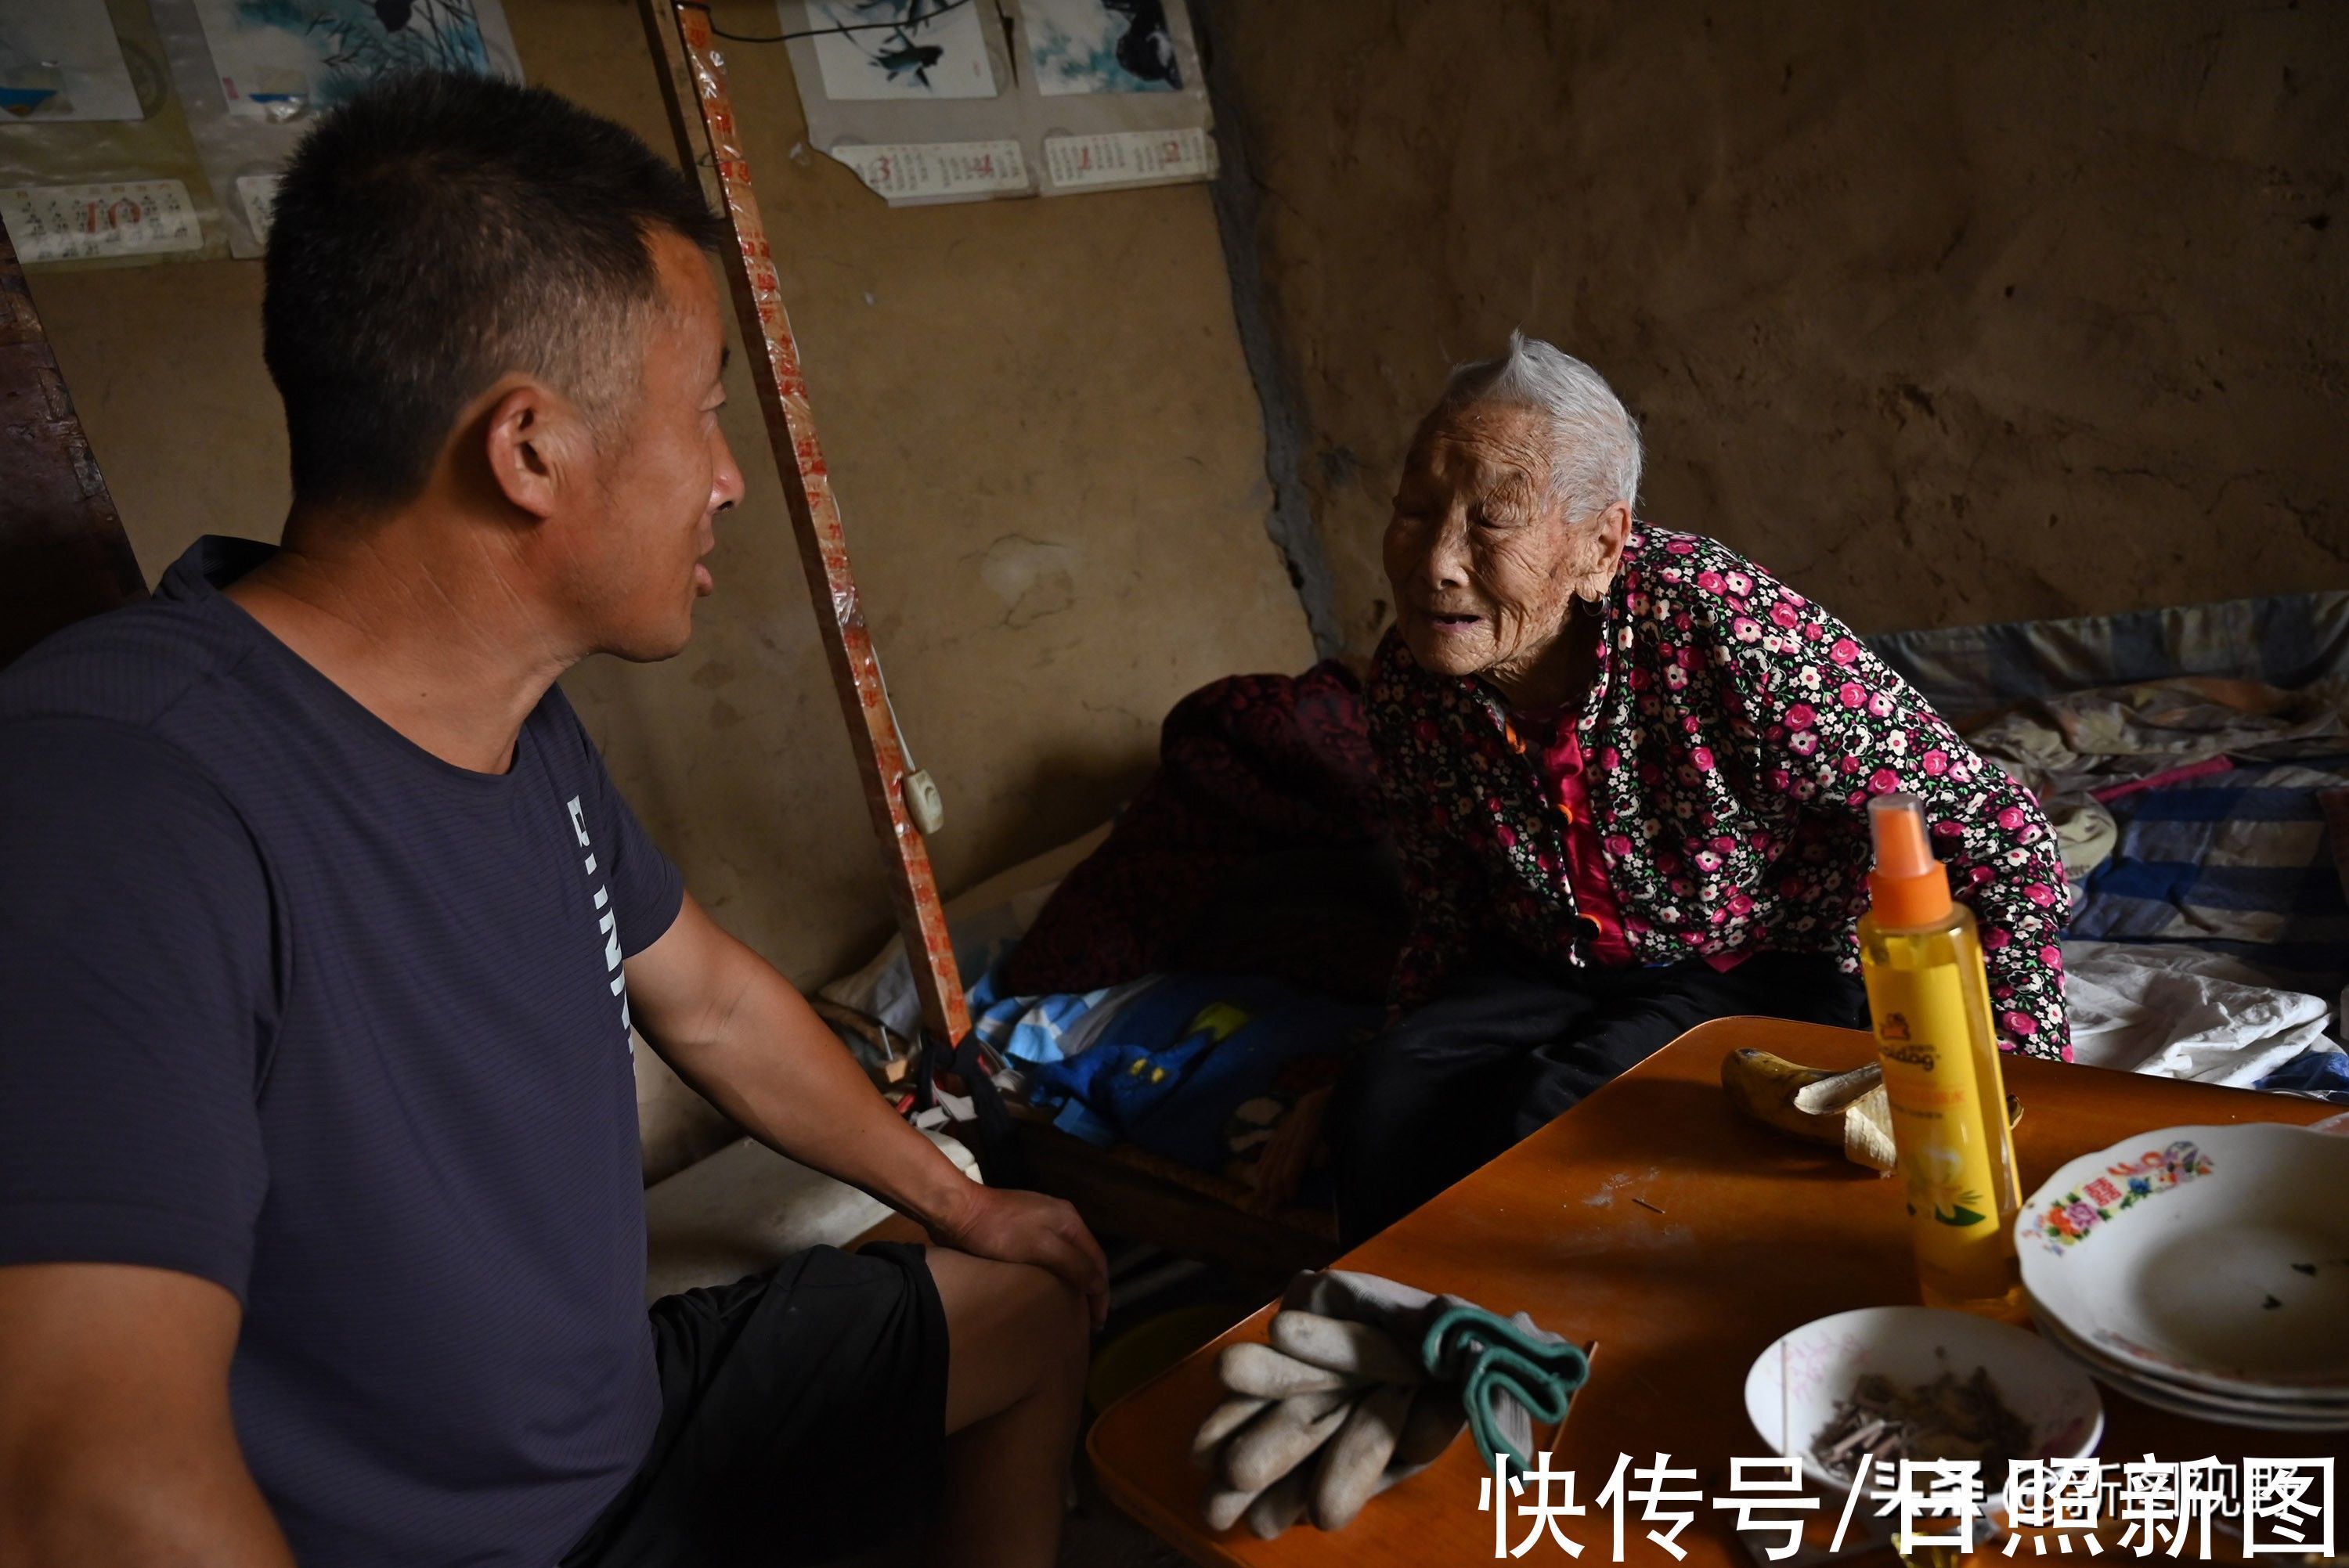 百岁奶奶|104岁奶奶，从没去过医院，养生方法极其简单，长寿秘诀人人都会